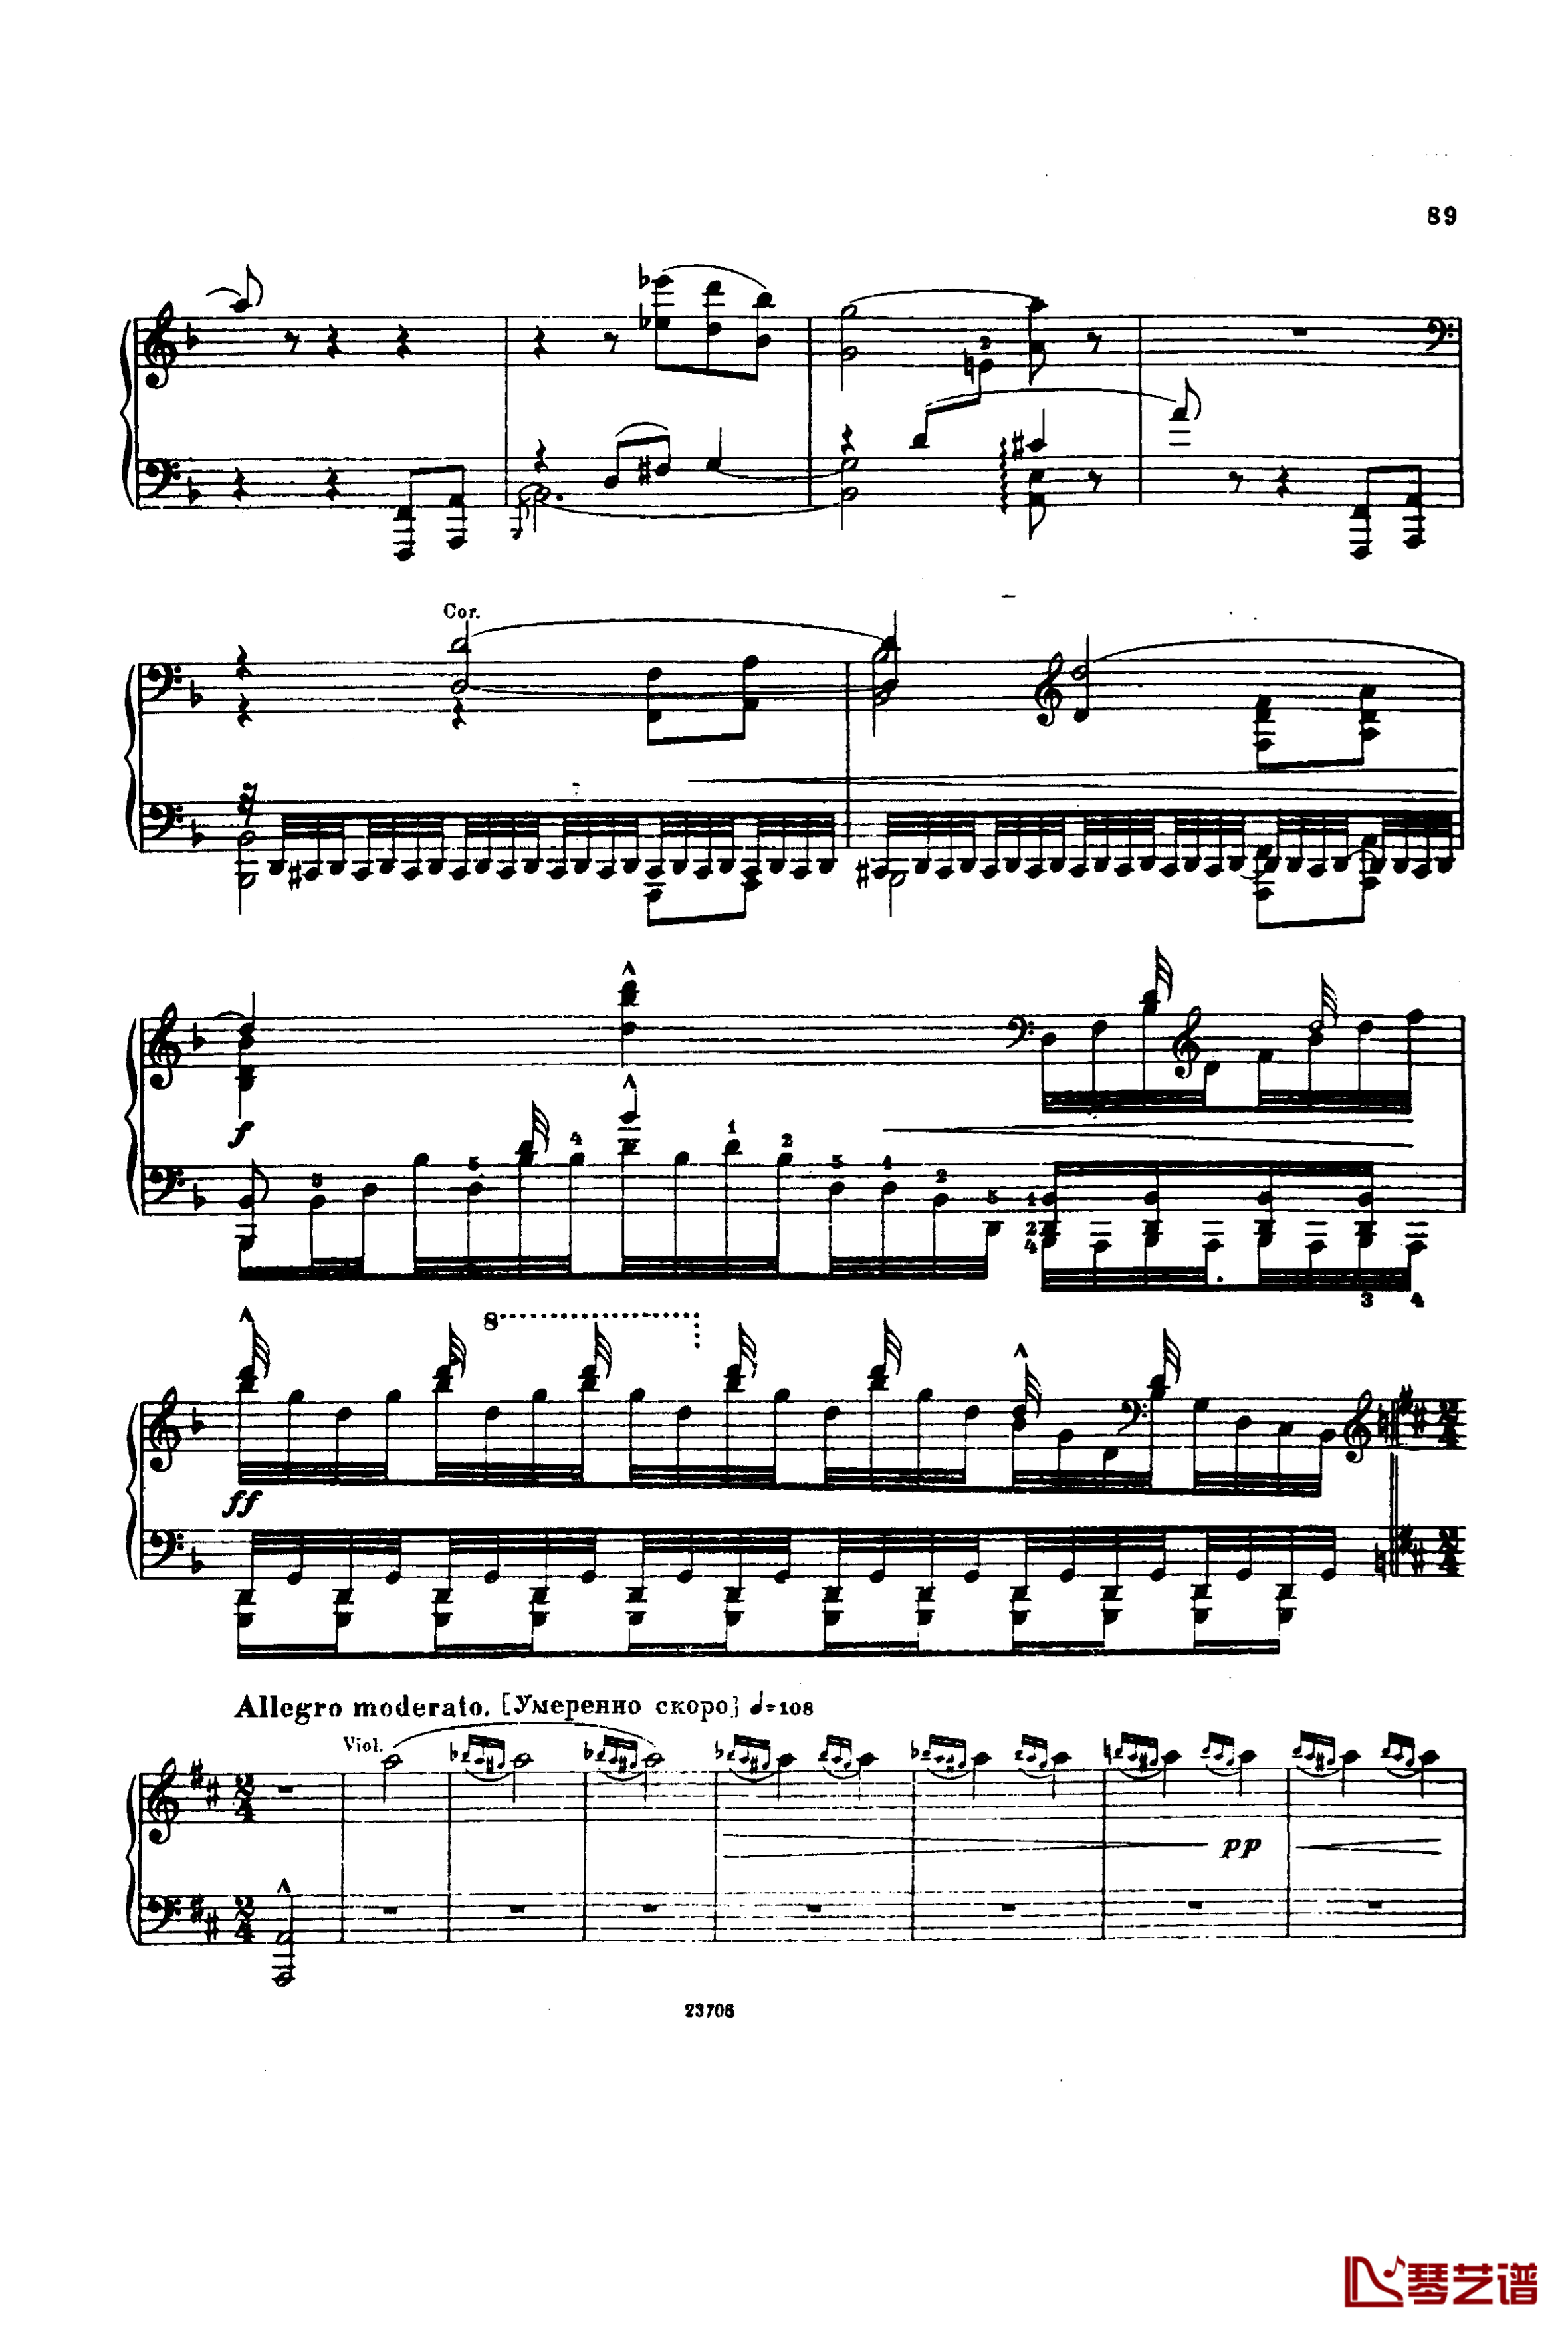 卡玛林斯卡亚幻想曲钢琴谱-格林卡3